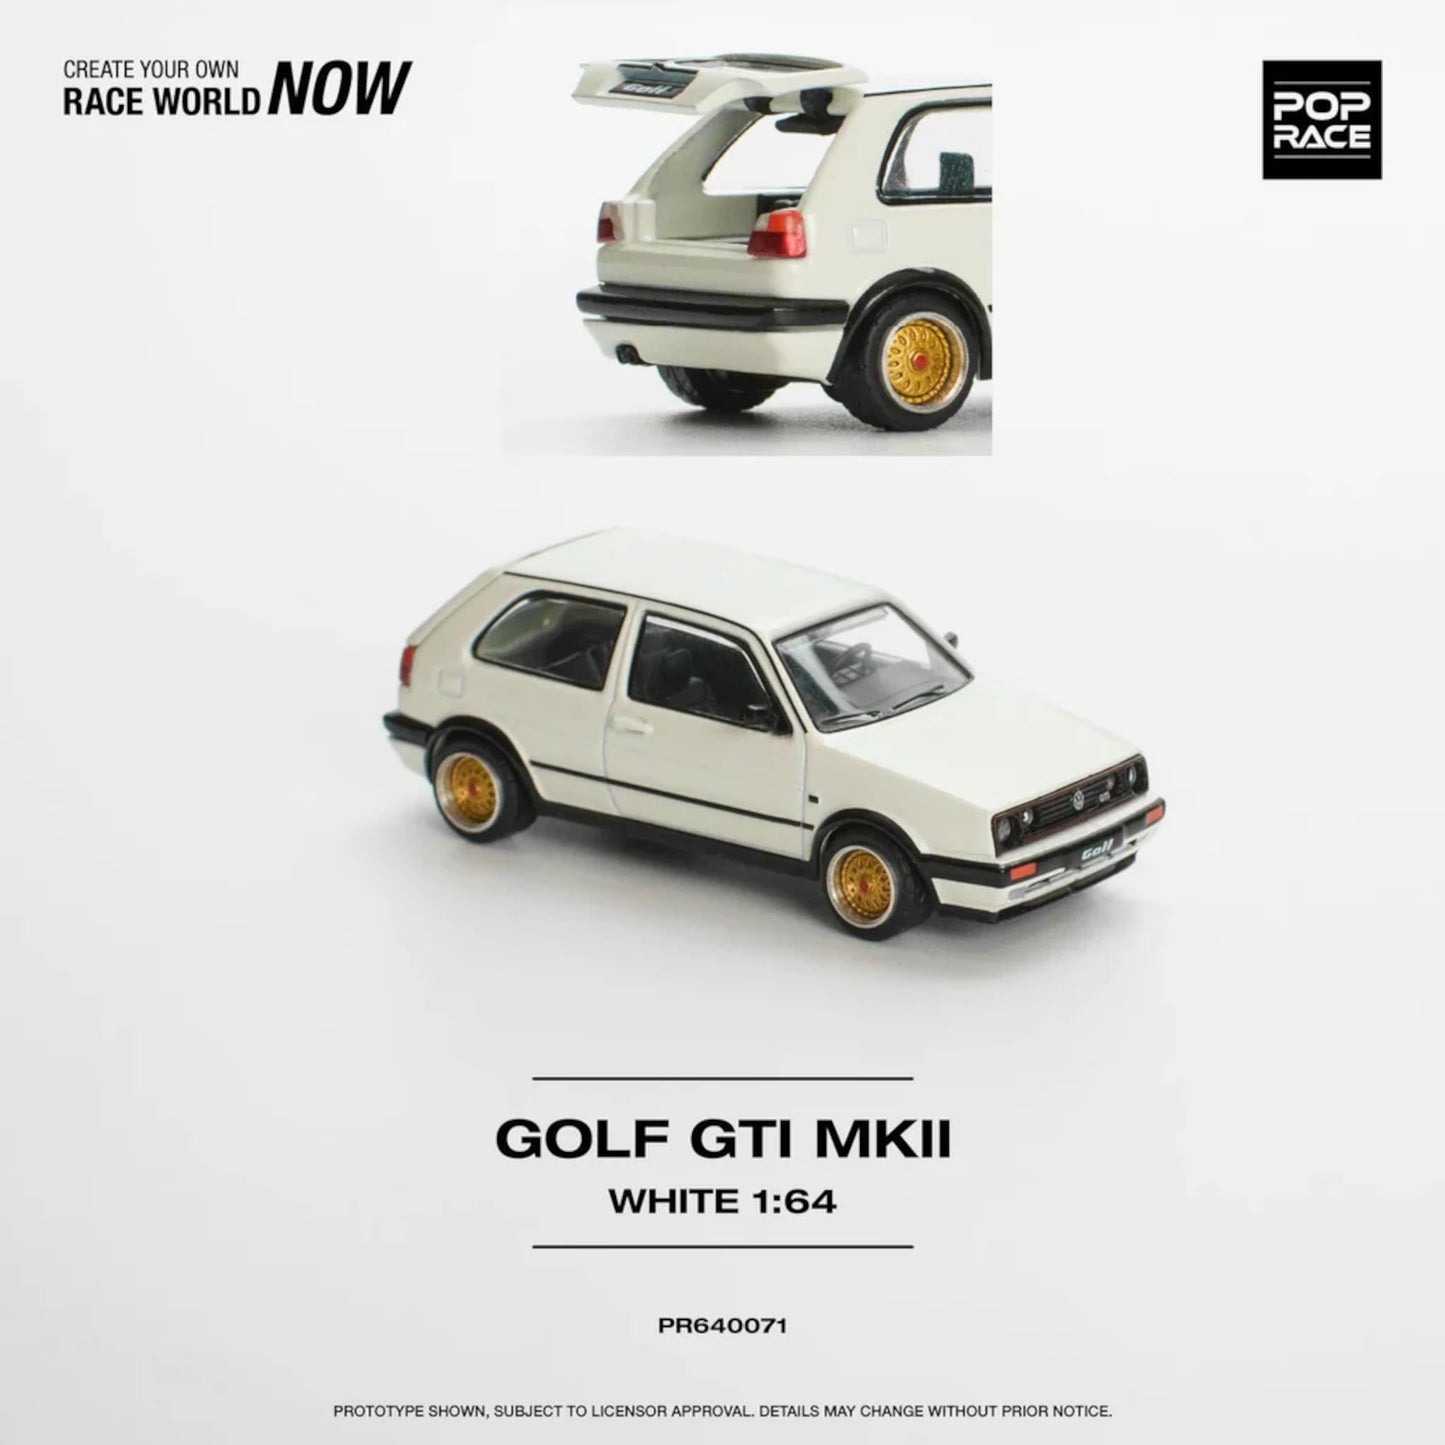 Volkswagen Golf GTI MKII Blanc Pop Race 1/64 - PR640071